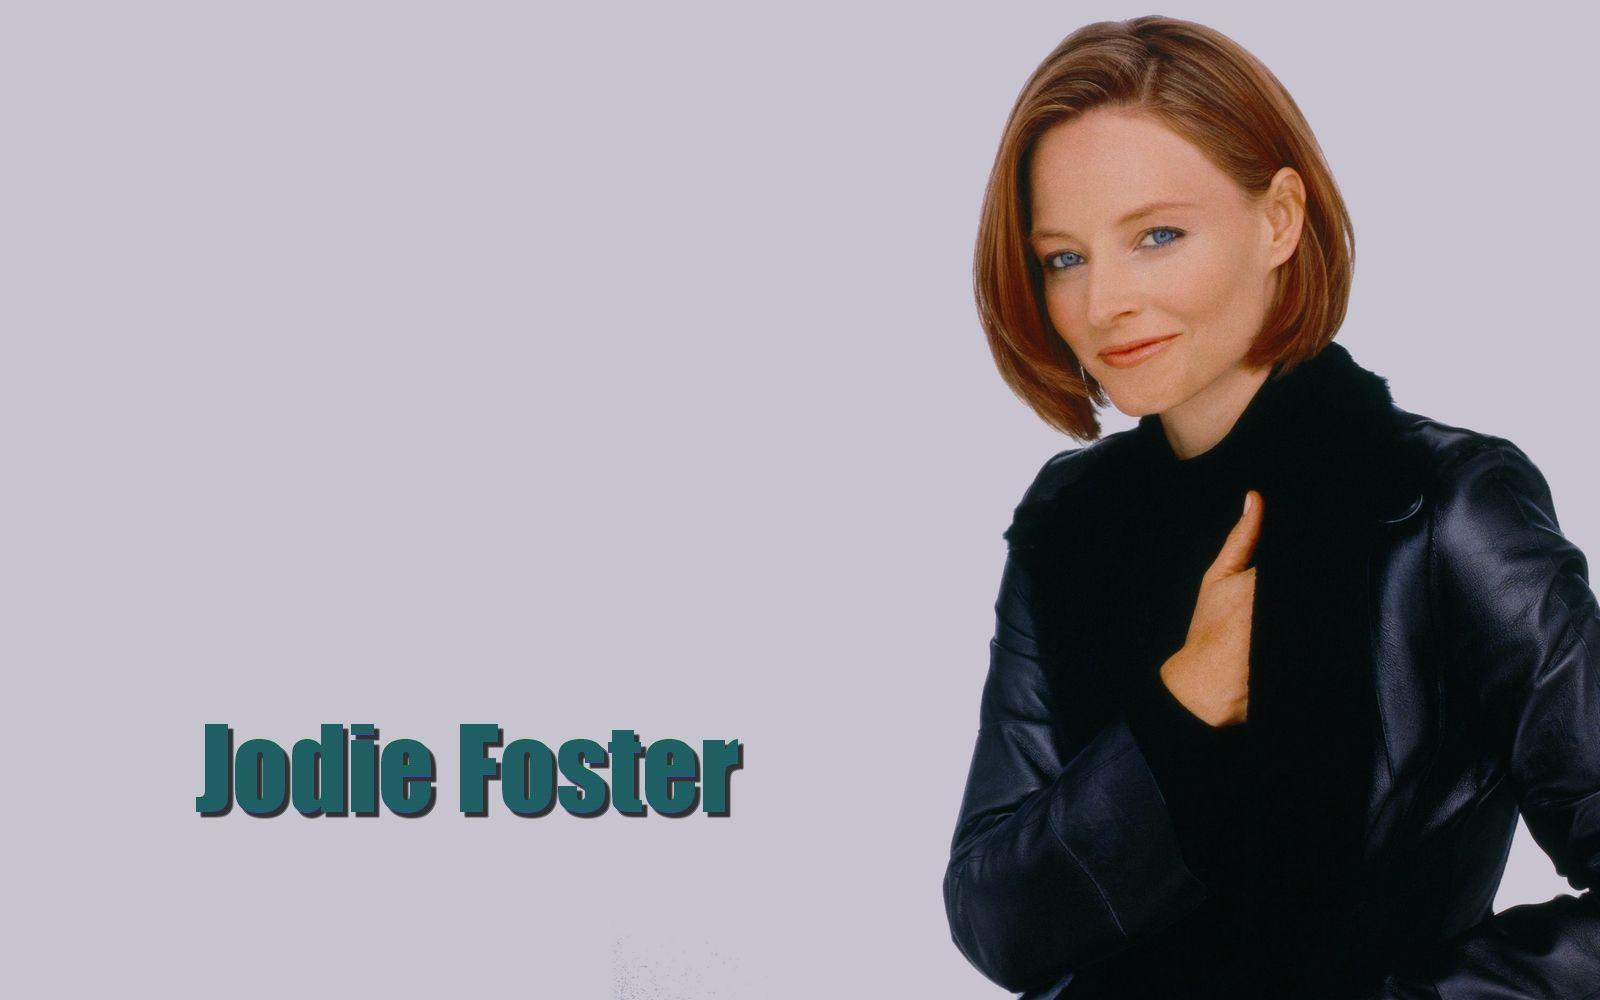 Jodie Foster Background Wallpaper